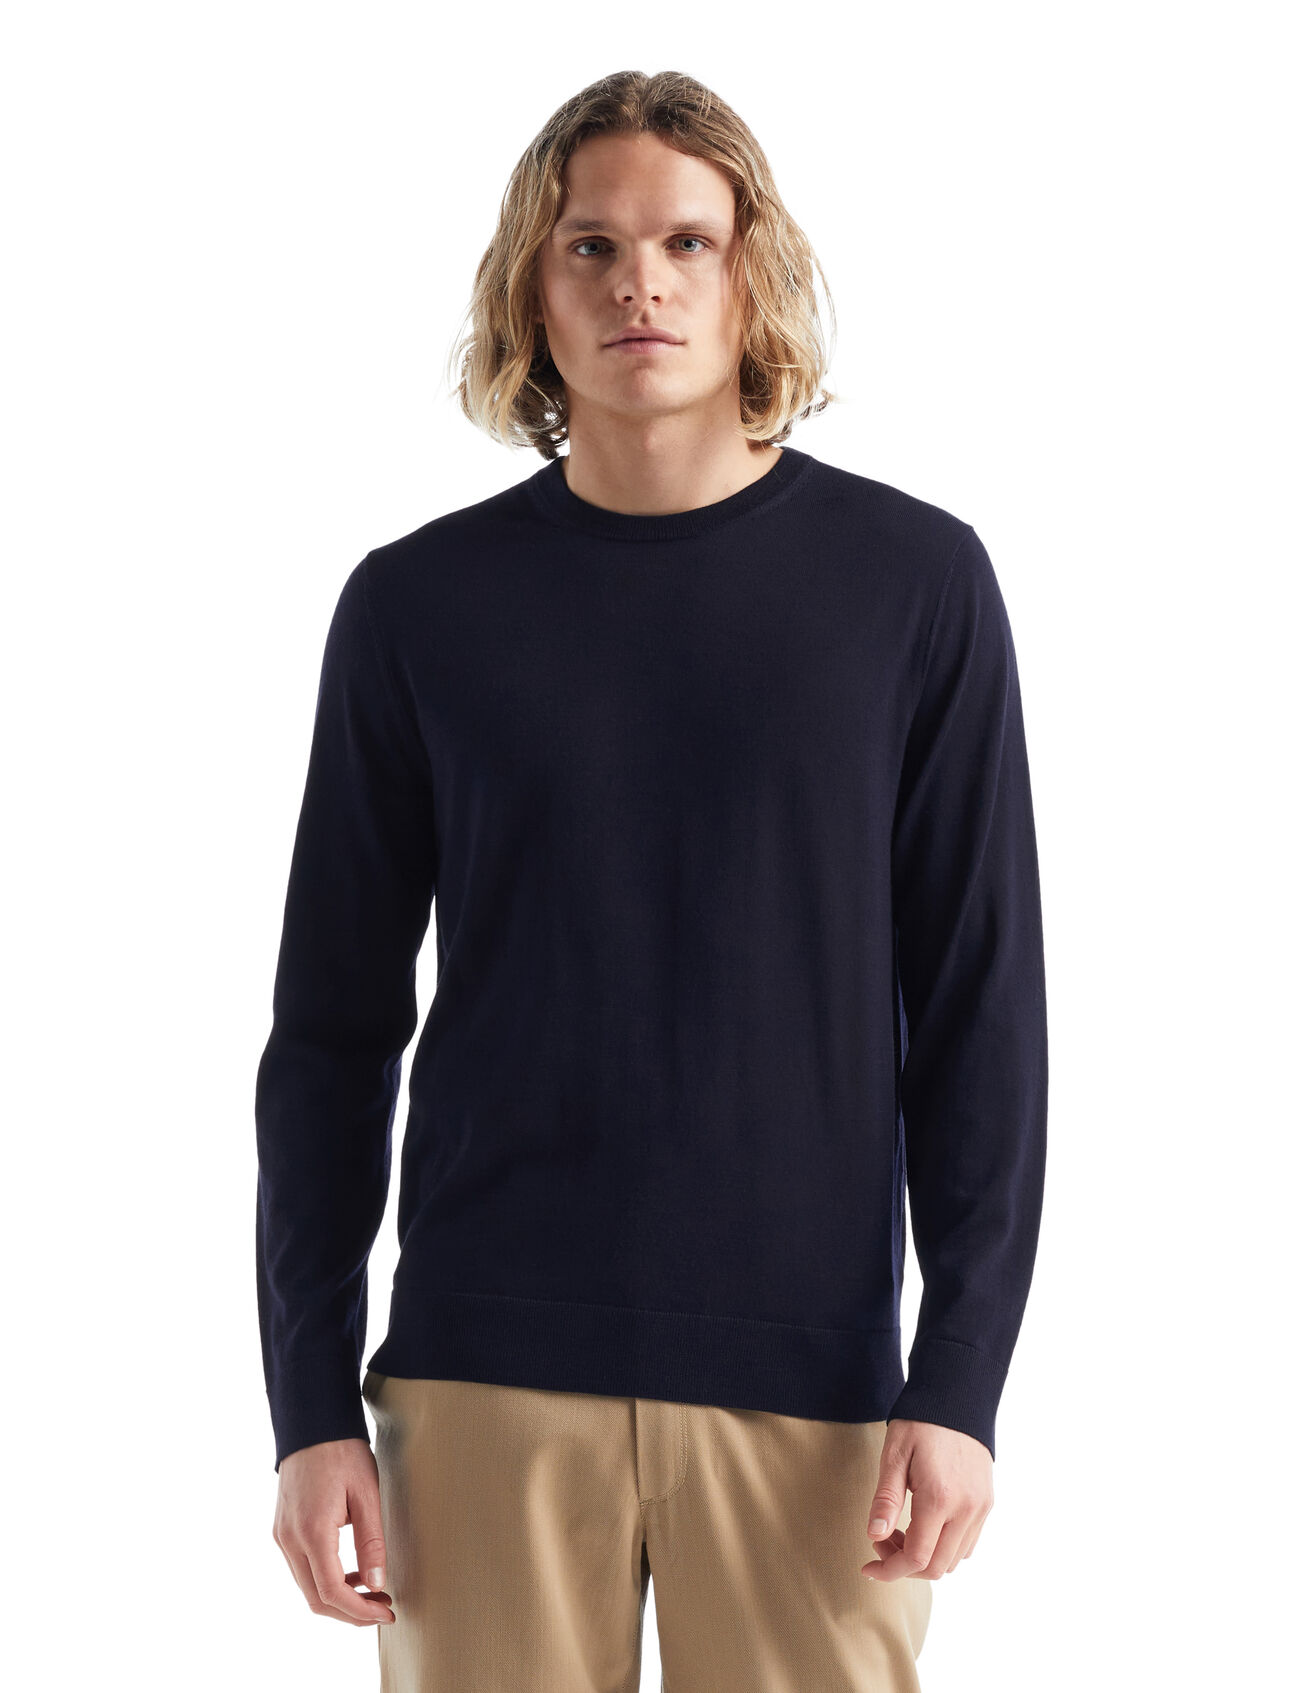 dla mężczyzn Sweter Wilcox z długim rękawem z wełny merino Klasyczny sweter na co dzień wykonany z niezwykle cienkiej wełny merino, która zapewnia niezrównaną miękkość. Sweter Wilcox z długim rękawem doskonale sprawdzi się w dni, kiedy potrzebujesz lekkiej dodatkowej warstwy.